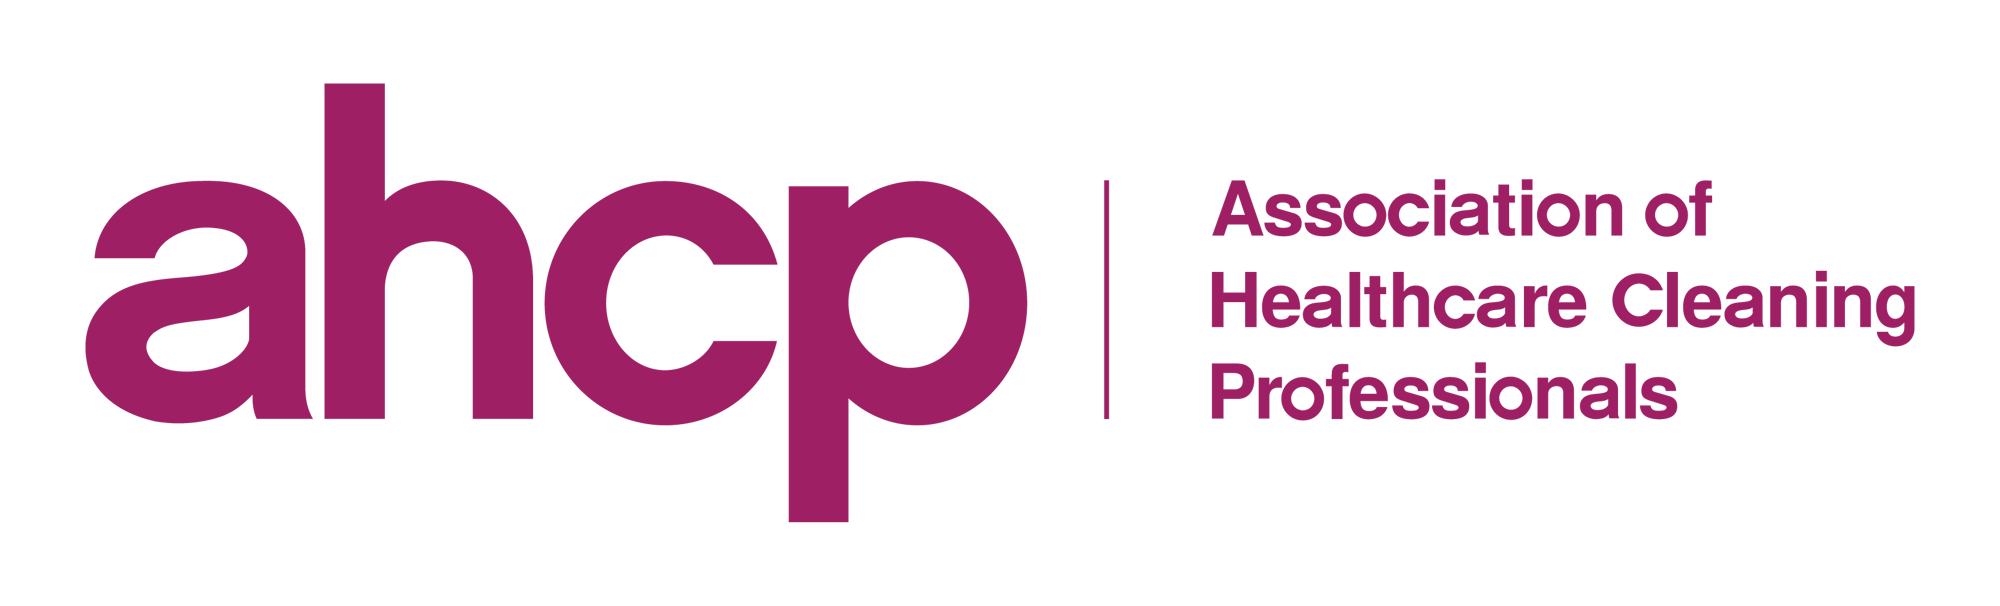 AHCP Logo